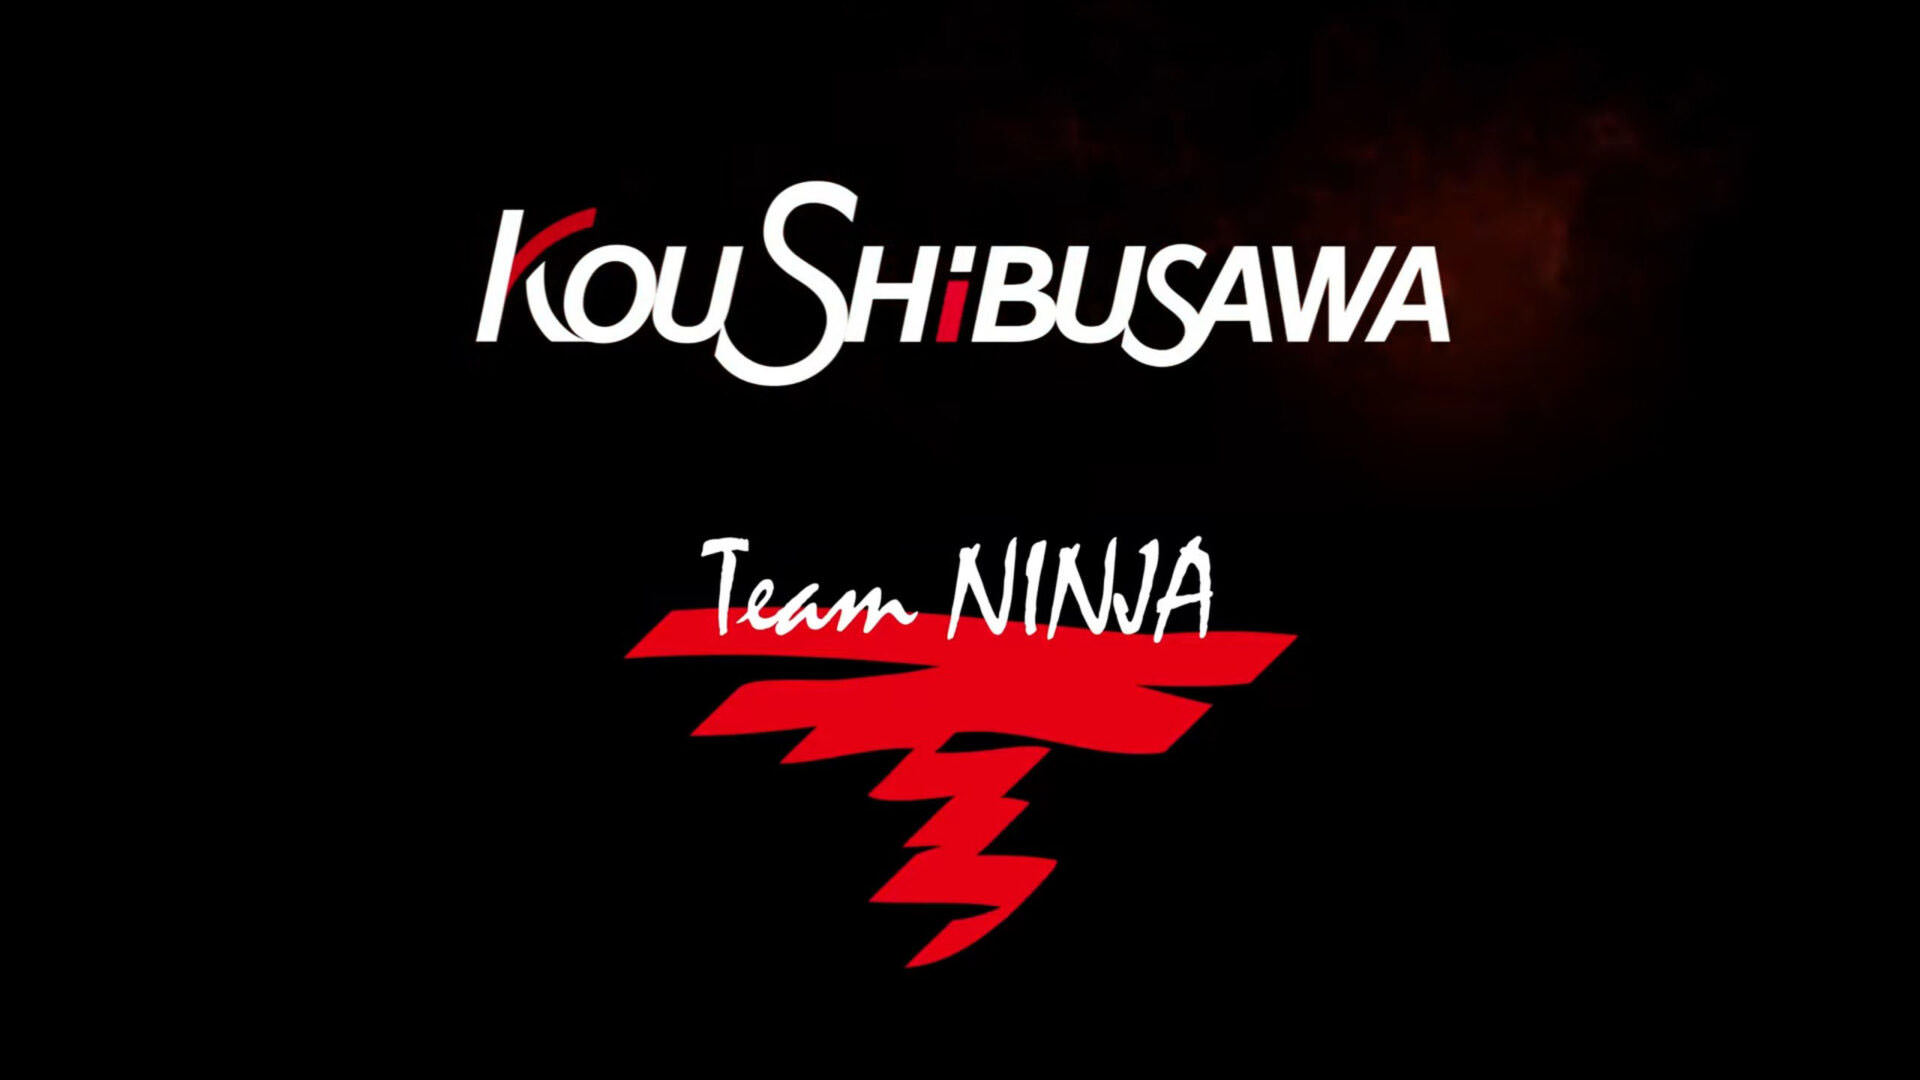 همکاری خالق Nioh و استودیو Team Ninja برای ساخت یک بازی اکشن